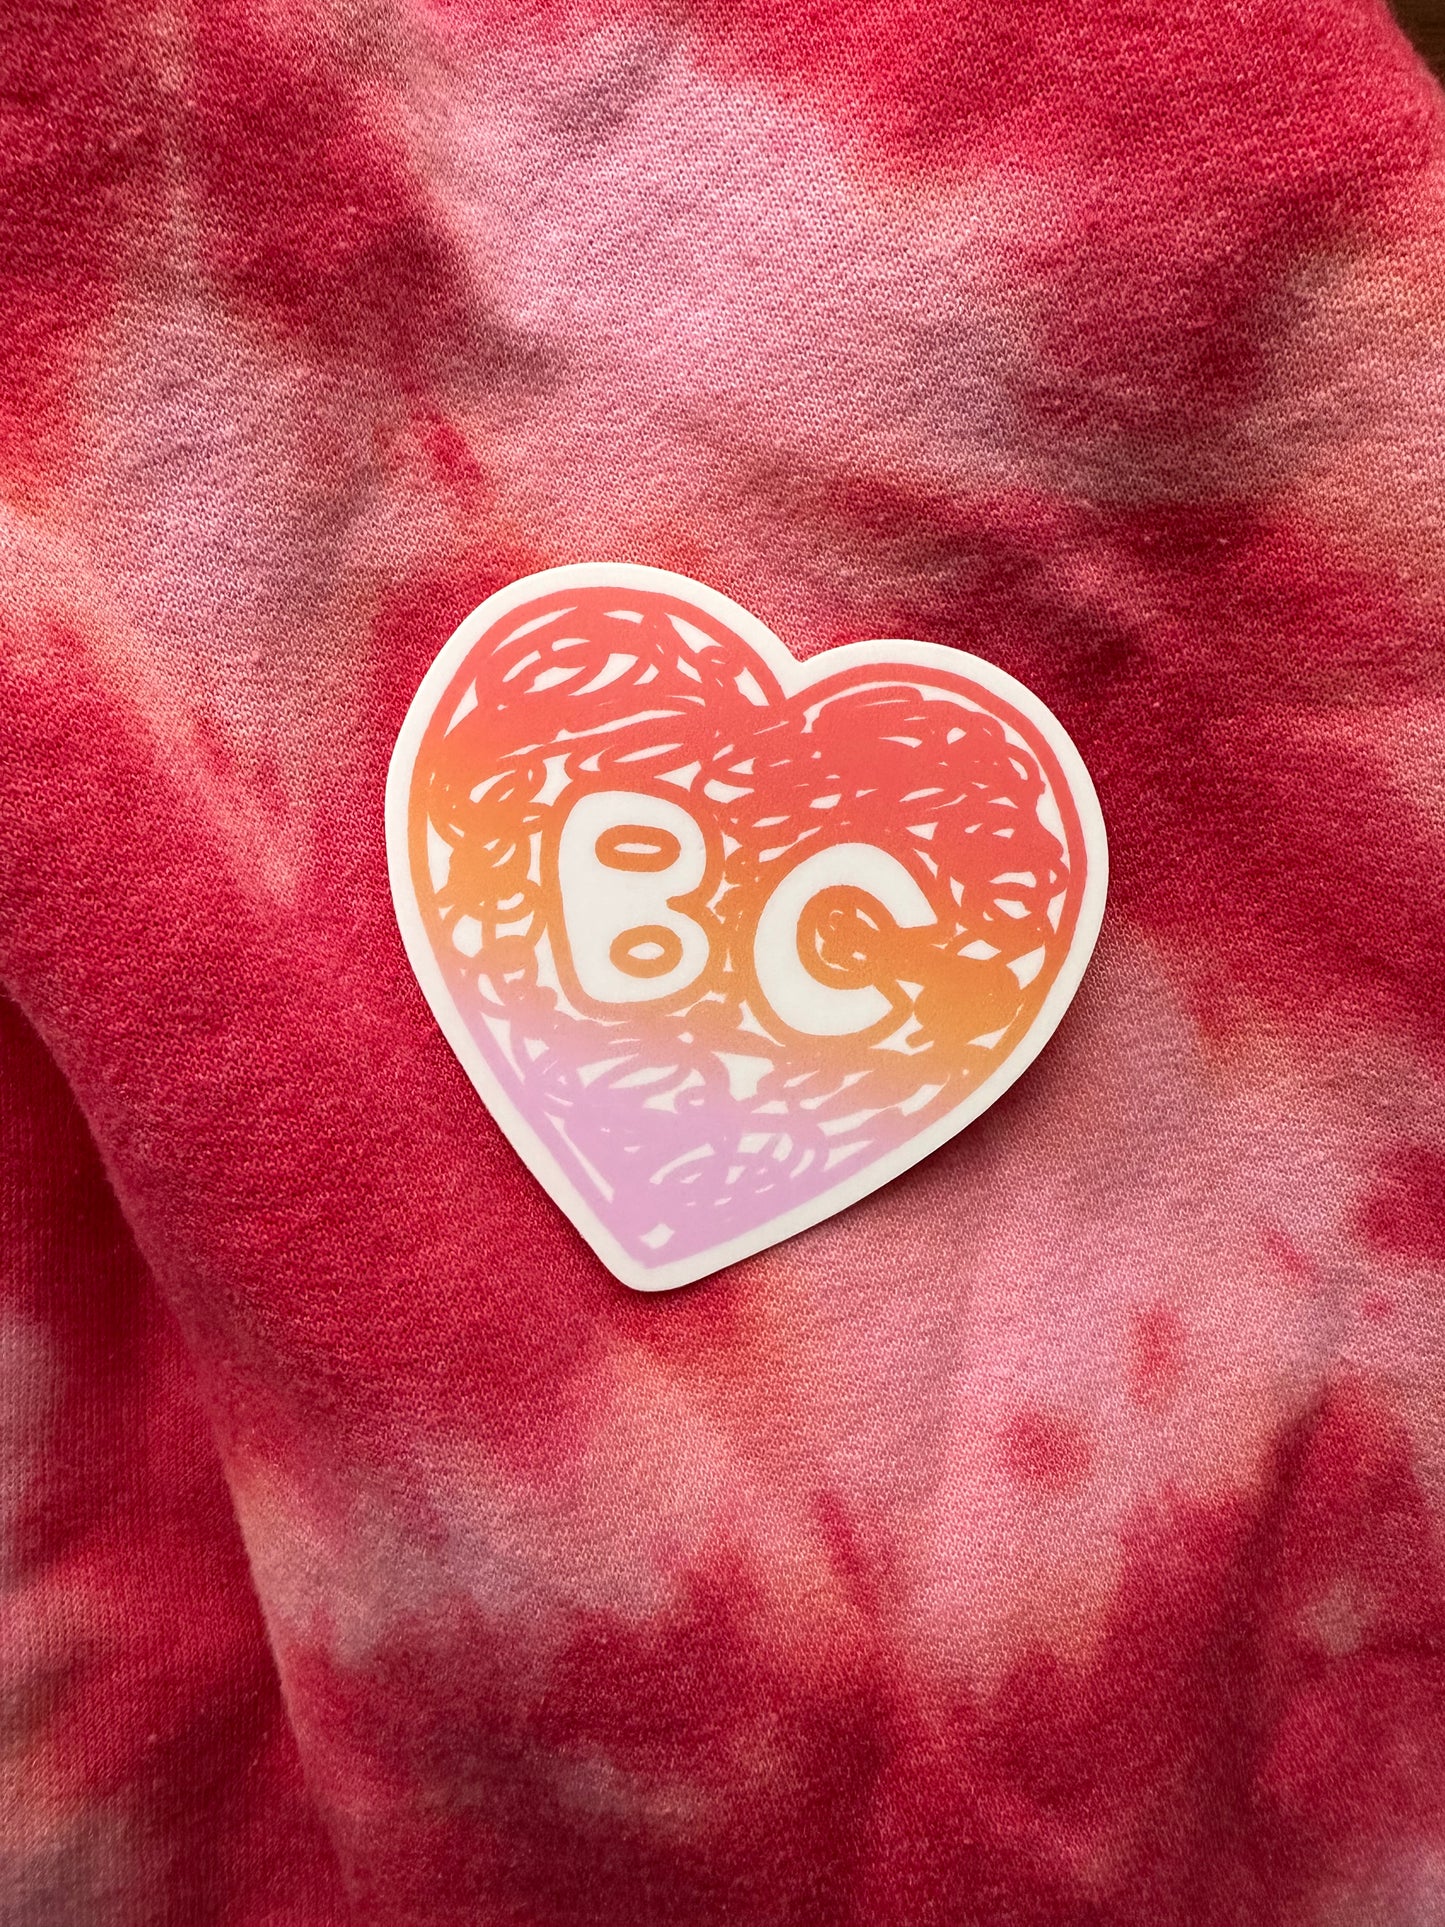 BC <3 Sticker